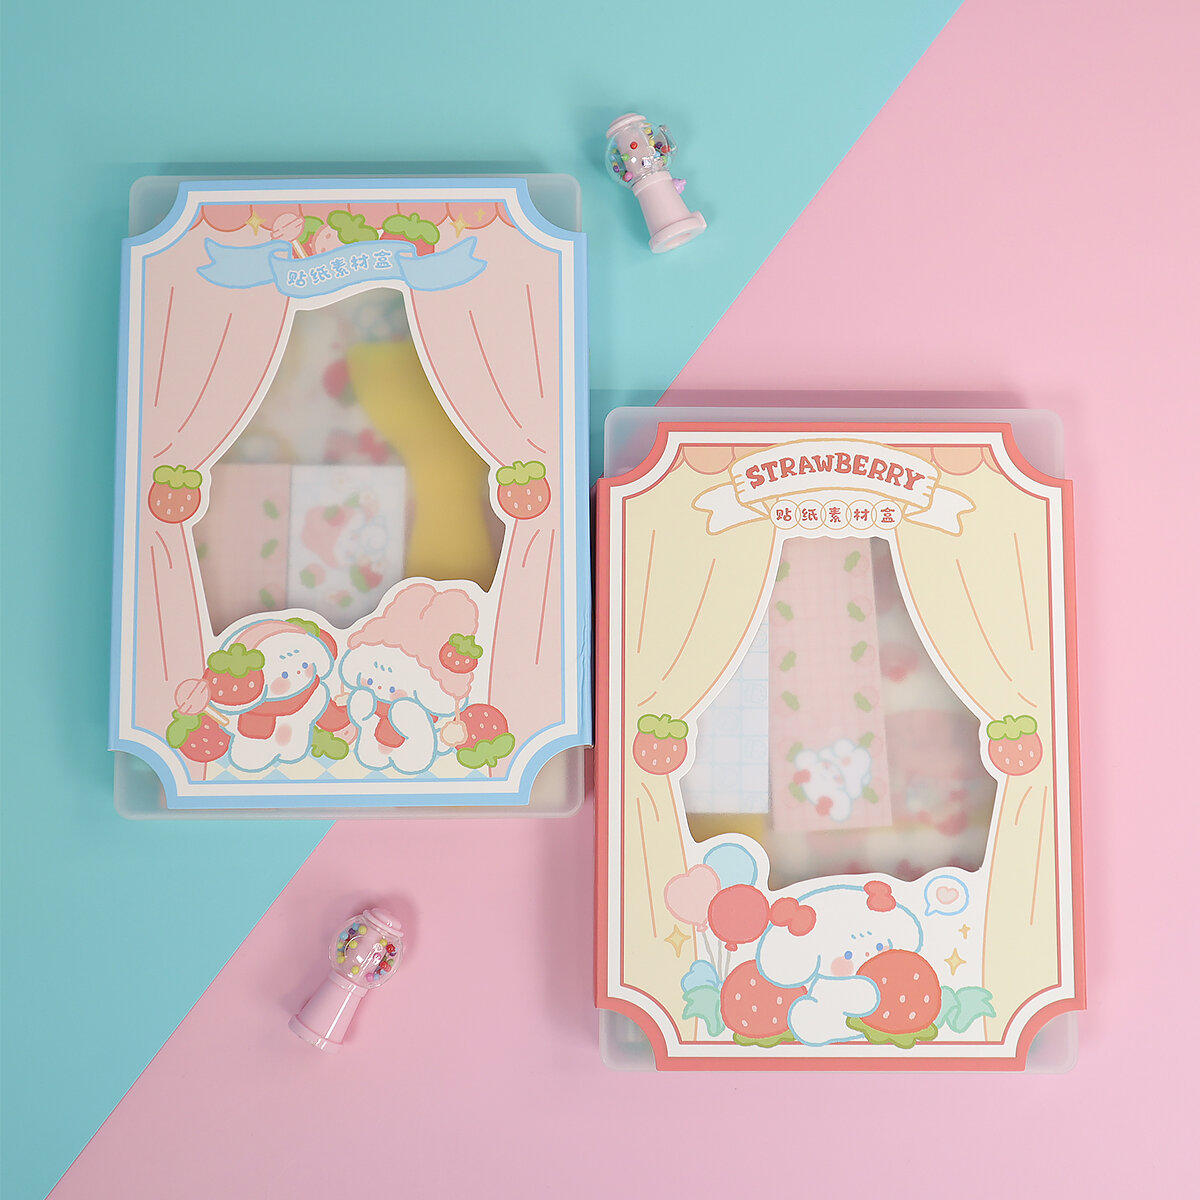 Stickers-kit Strawberry bunny